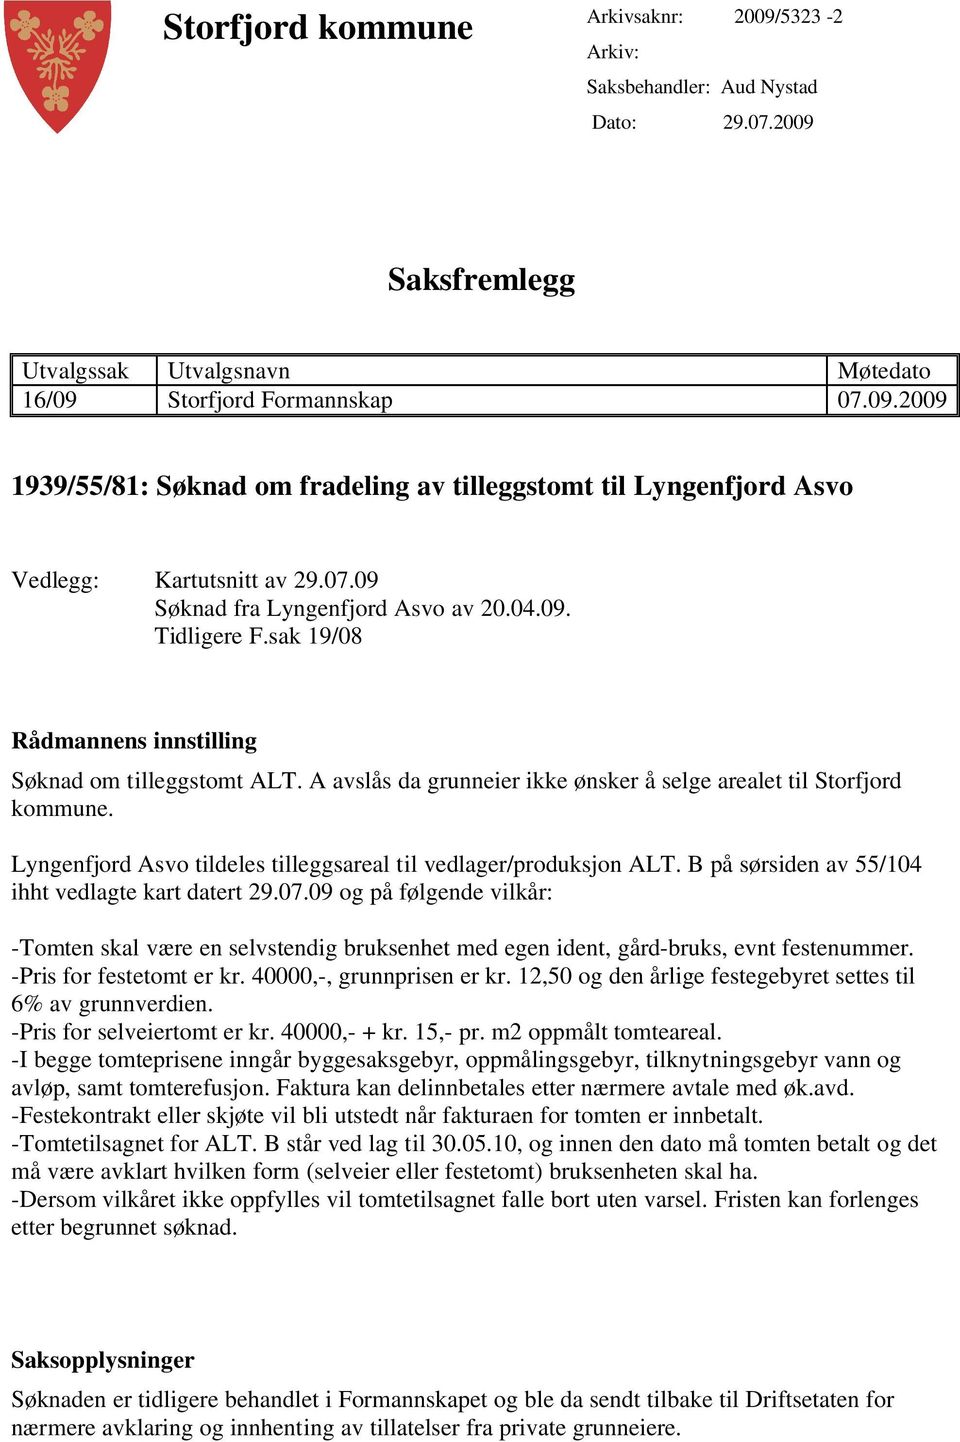 Lyngenfjord Asvo tildeles tilleggsareal til vedlager/produksjon ALT. B på sørsiden av 55/104 ihht vedlagte kart datert 29.07.